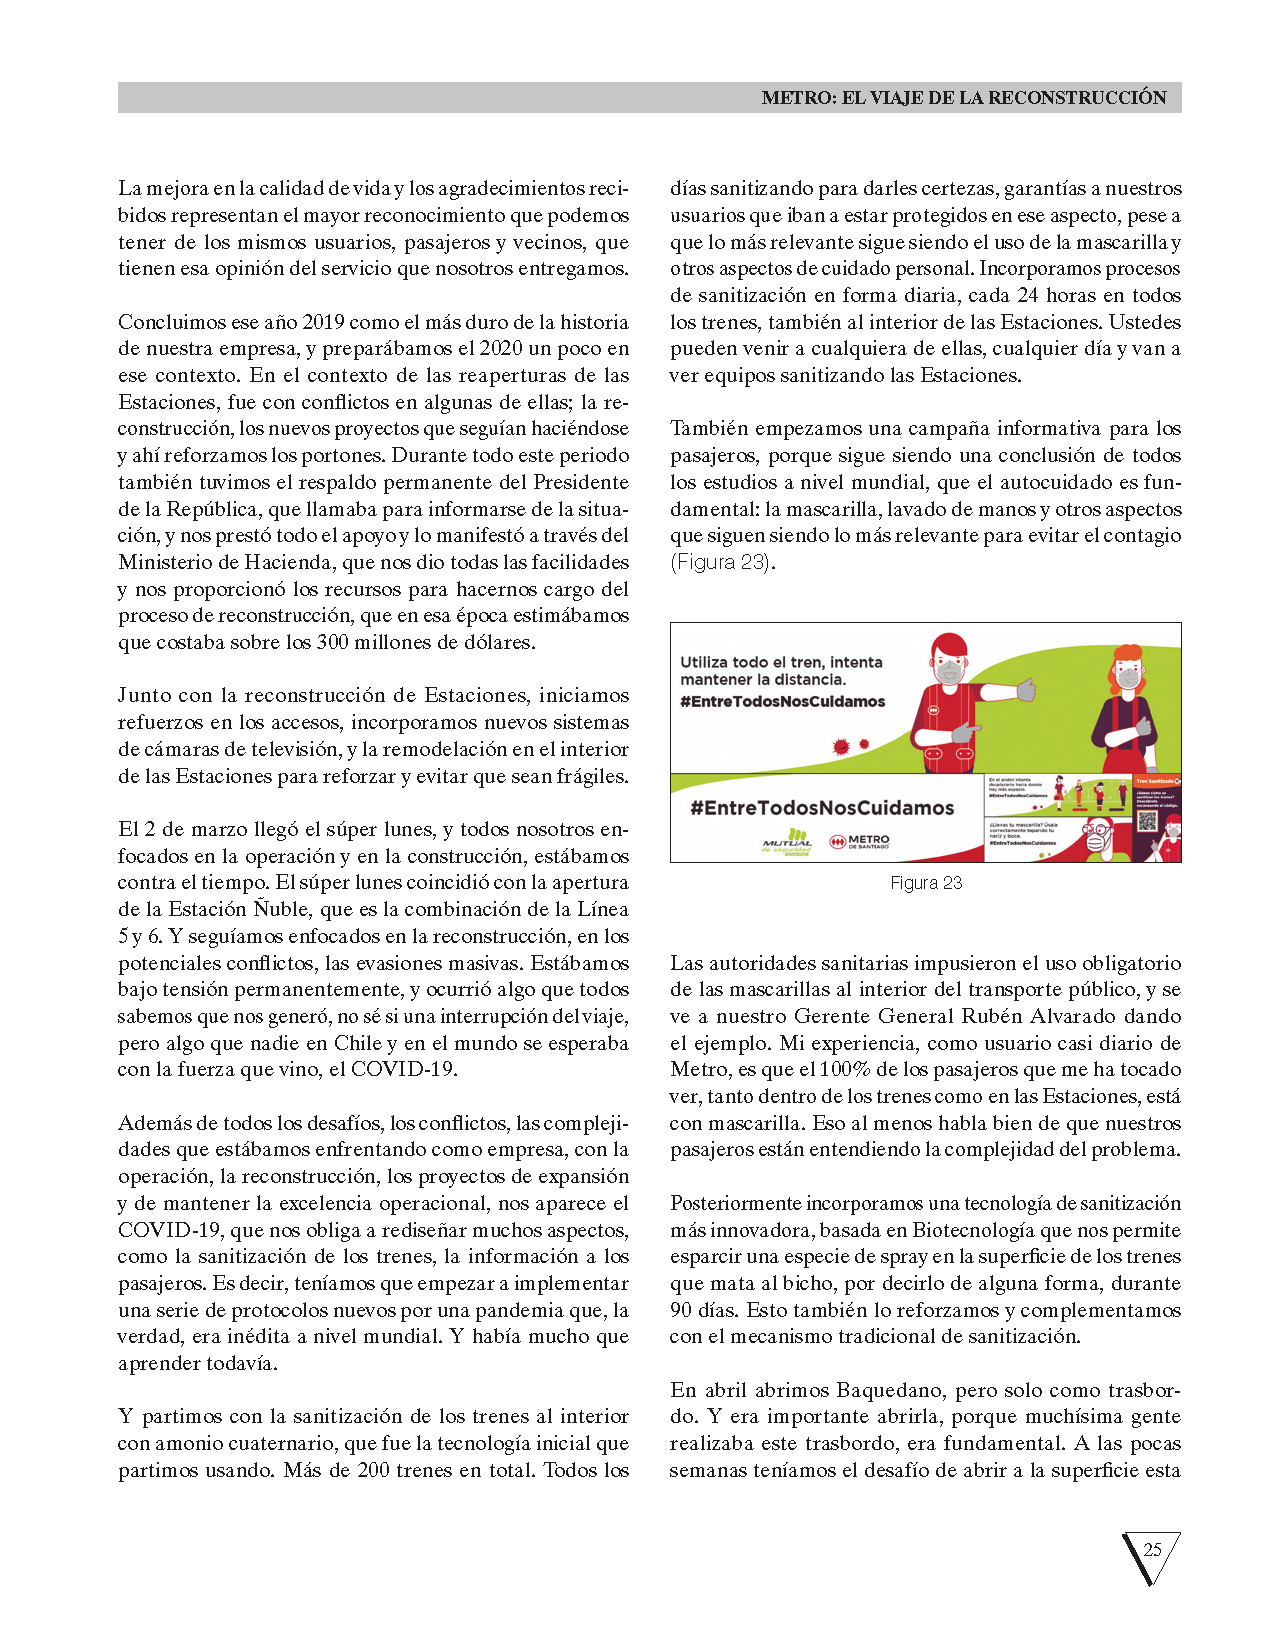 Revista_Anales_490-agosto de 2020 DEF_Página_27.png